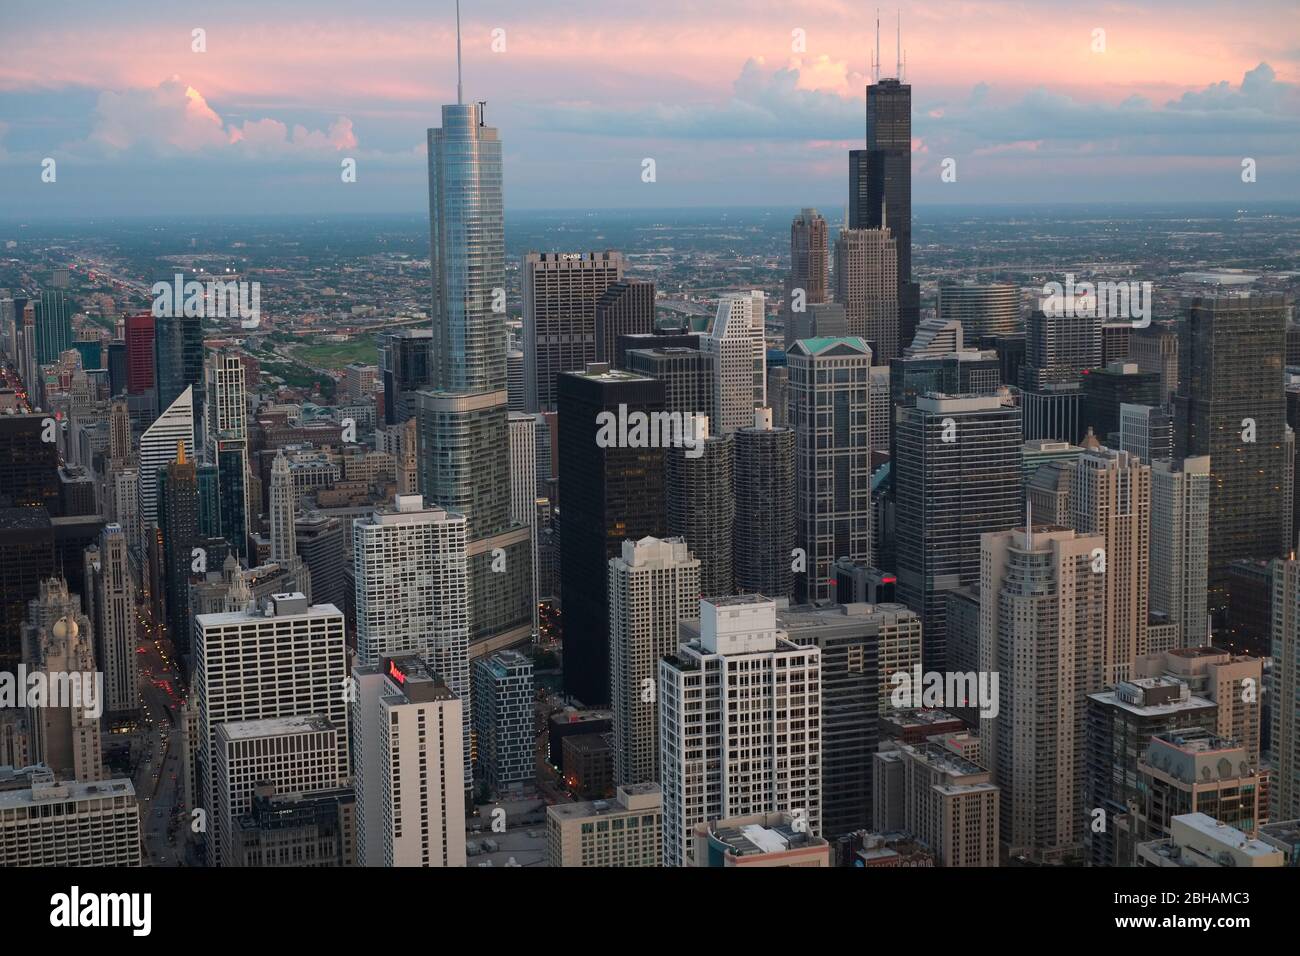 Tours de bureaux du centre-ville de Chicago photographiées depuis l'observatoire John Hancock. Willis Tower, anciennement Sears Tower, conçu par l'architecte Fazlur Rahman Khan, autrefois le gratte-ciel le plus haut du monde, est au centre de droite Banque D'Images